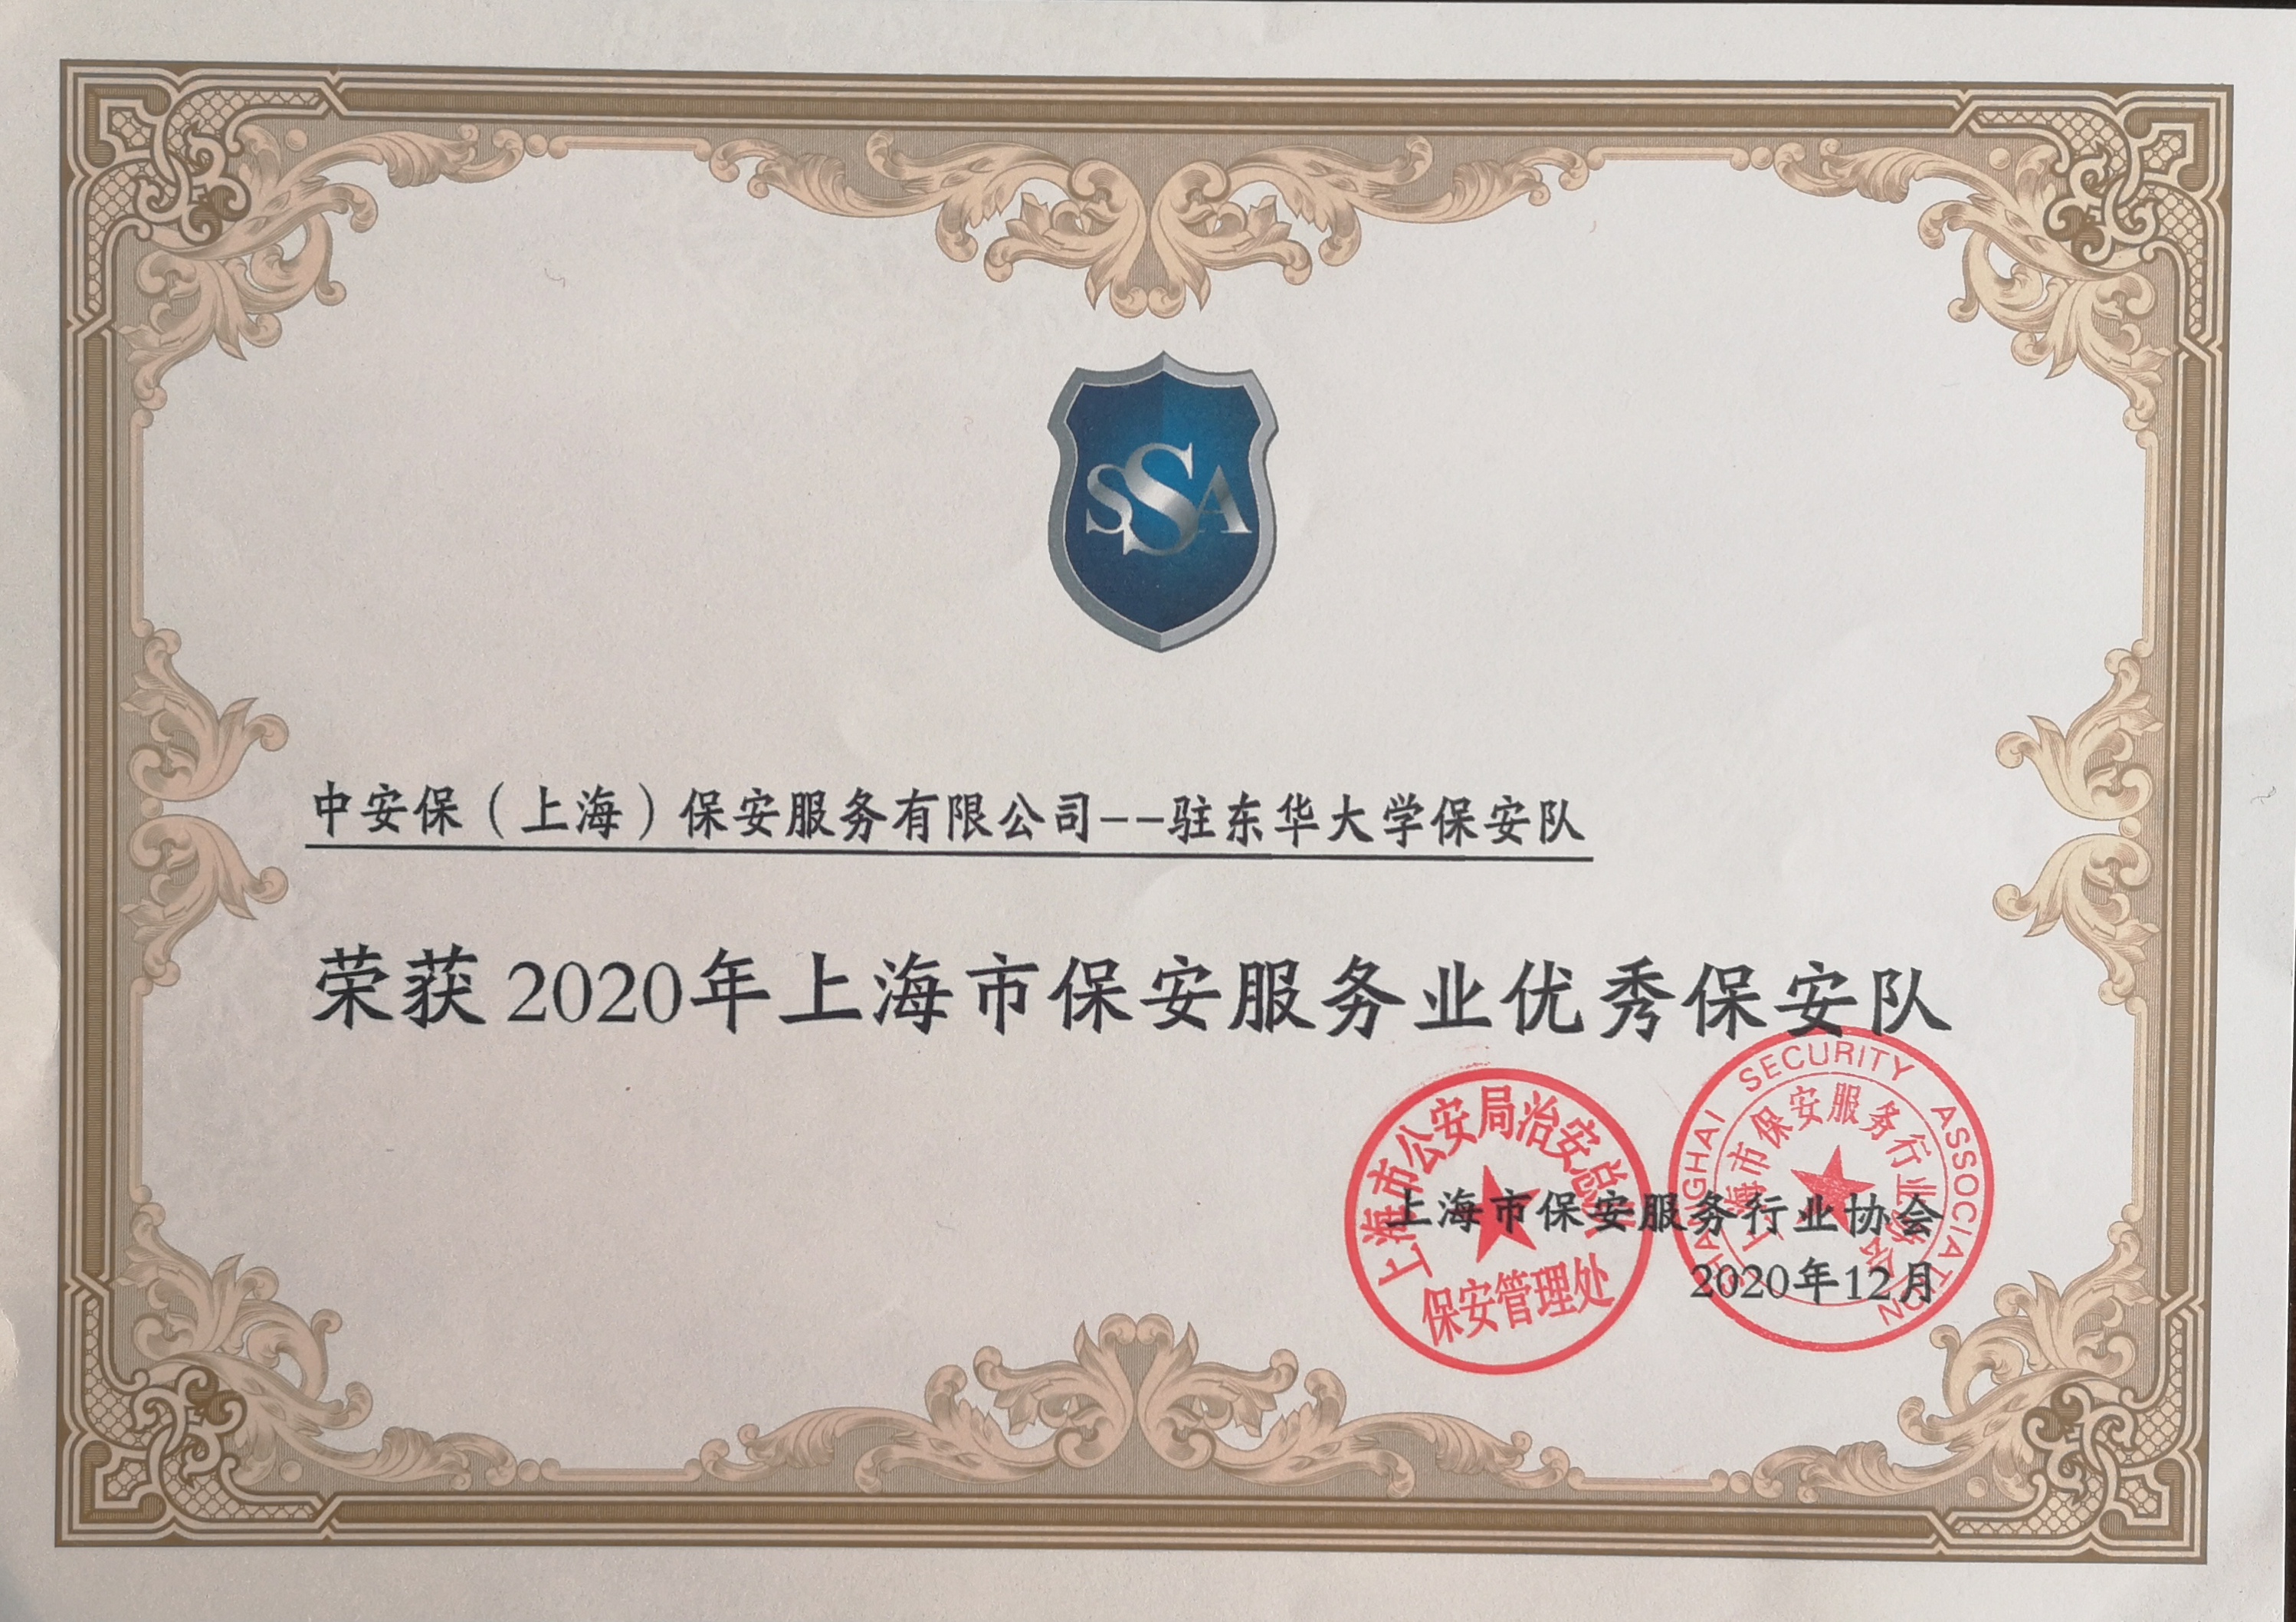 恭贺中安保（上海）荣获2020年上海市保安优秀保安队